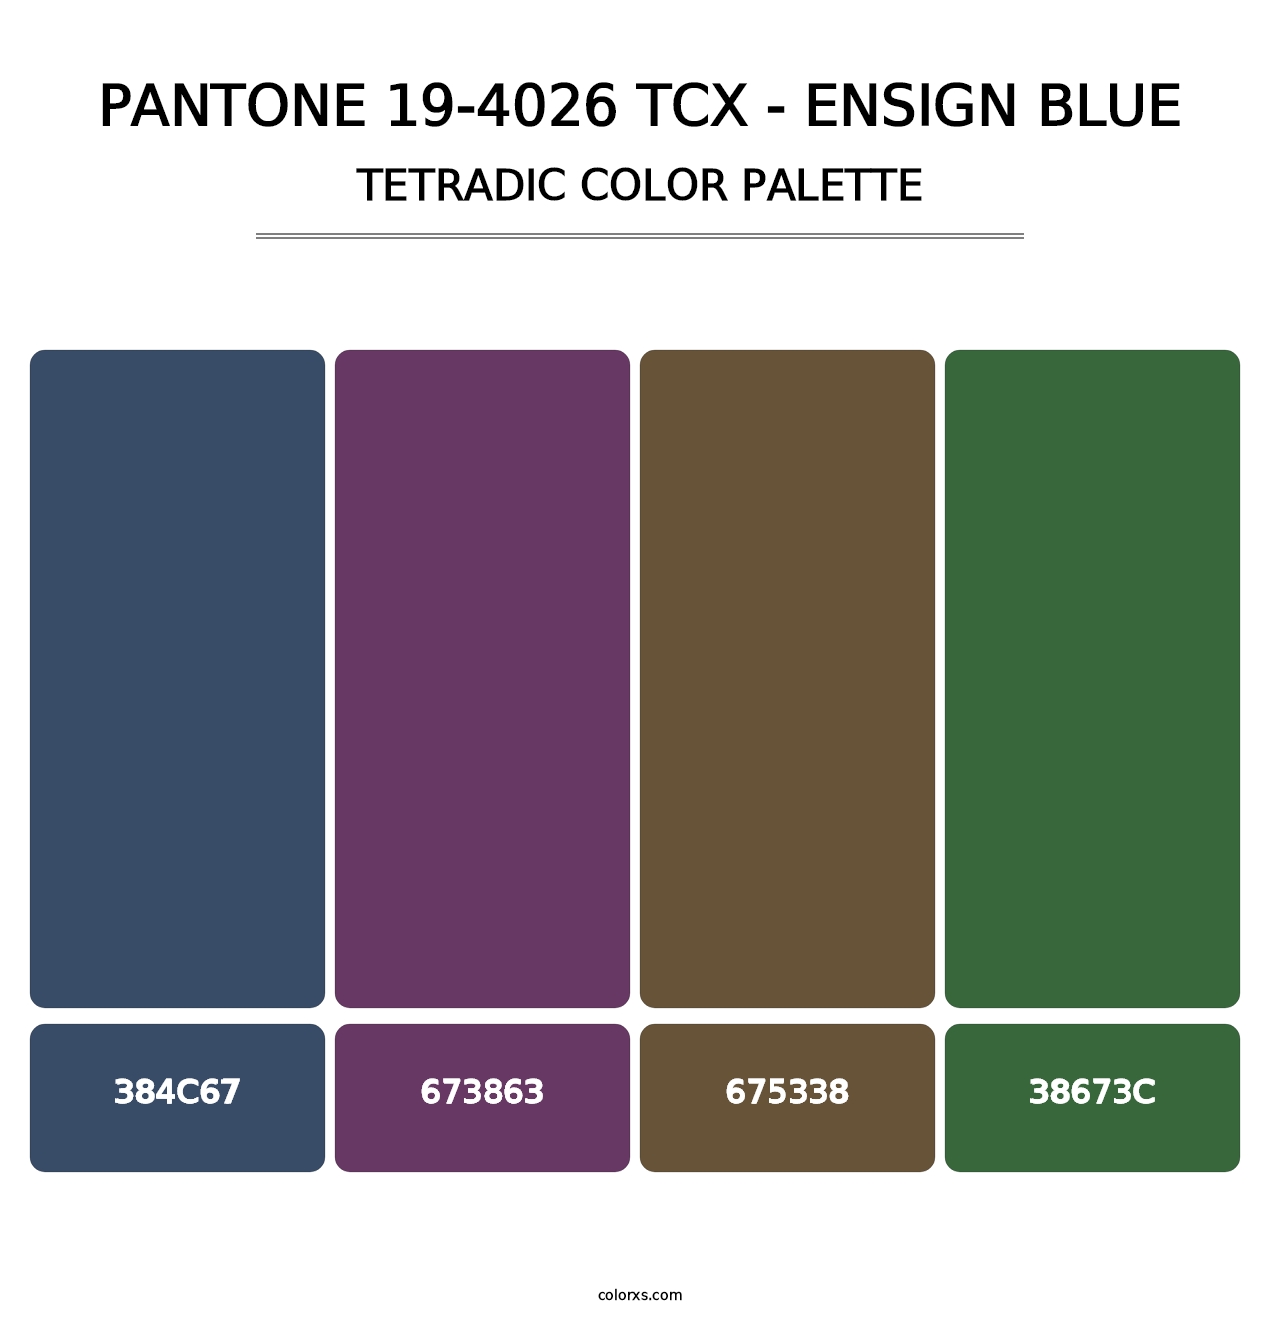 PANTONE 19-4026 TCX - Ensign Blue - Tetradic Color Palette